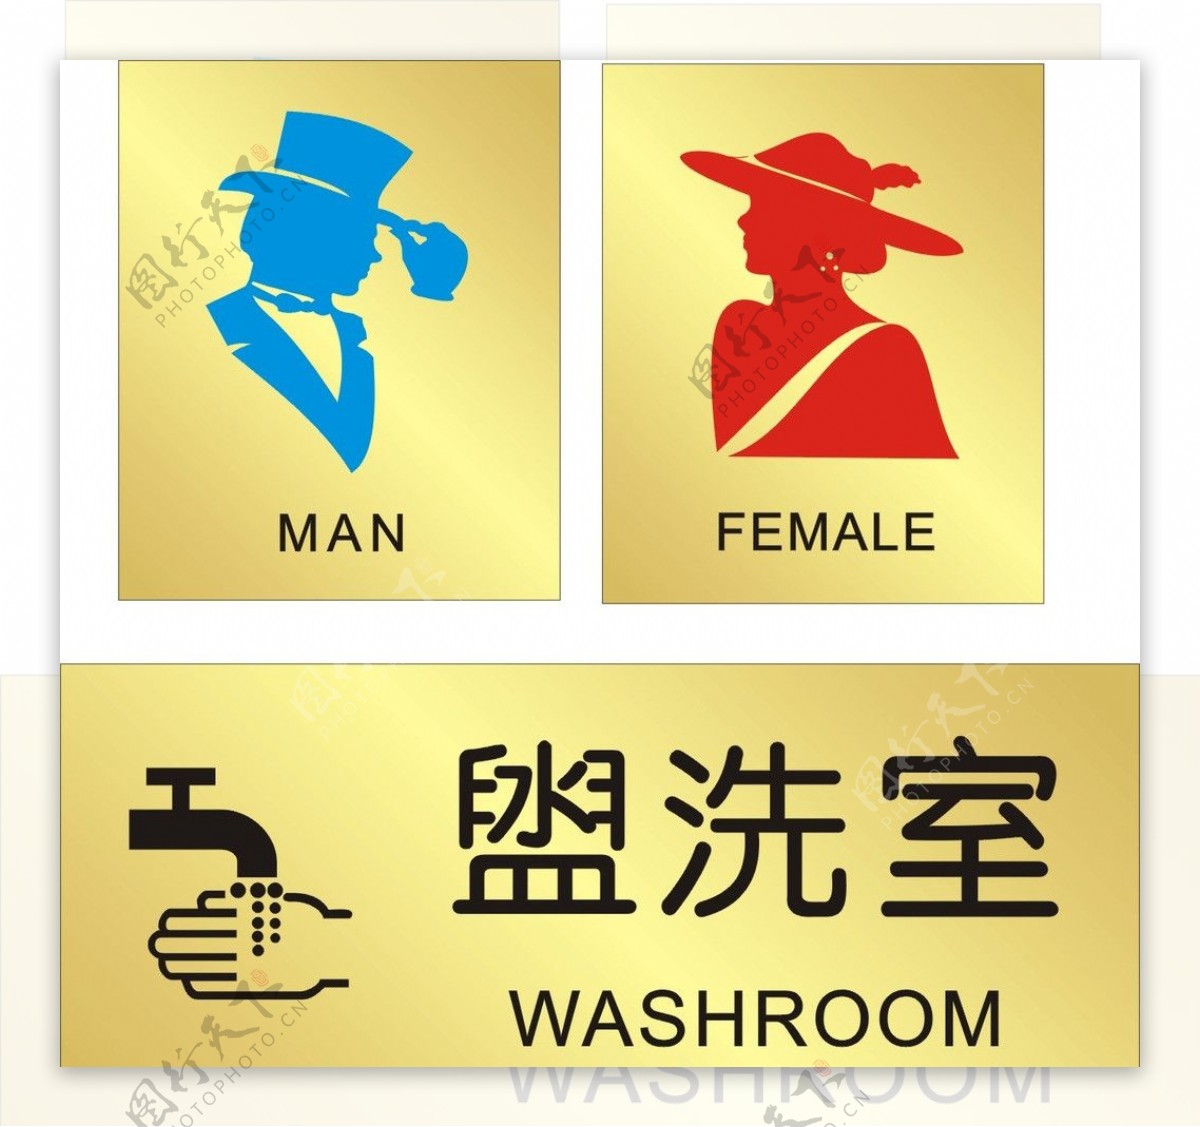 男女洗手间牌子金色盥洗室图标